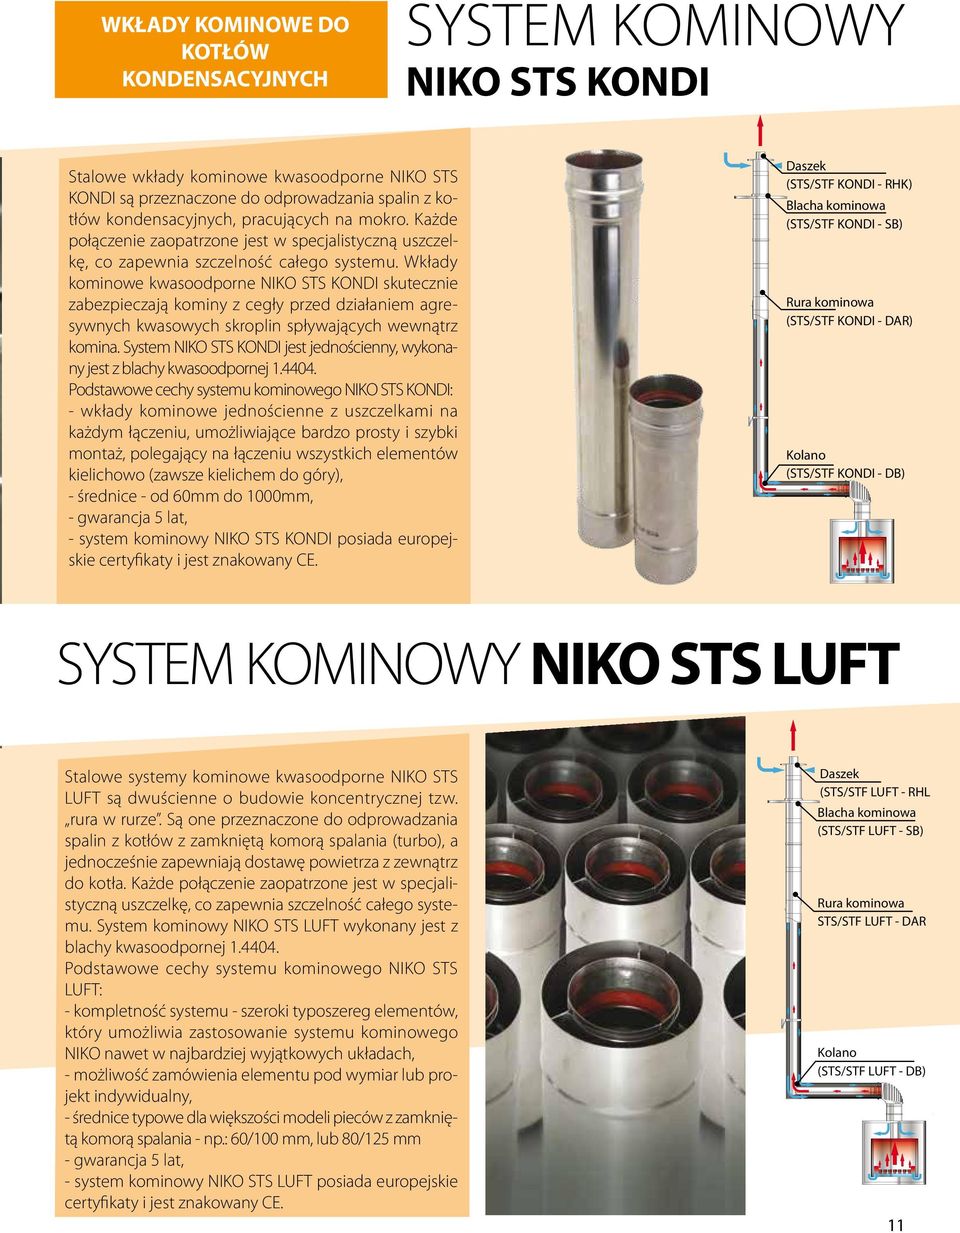 Wkłady kominowe kwasoodporne NIKO STS KONDI skutecznie zabezpieczają kominy z cegły przed działaniem agresywnych kwasowych skroplin spływających wewnątrz komina.